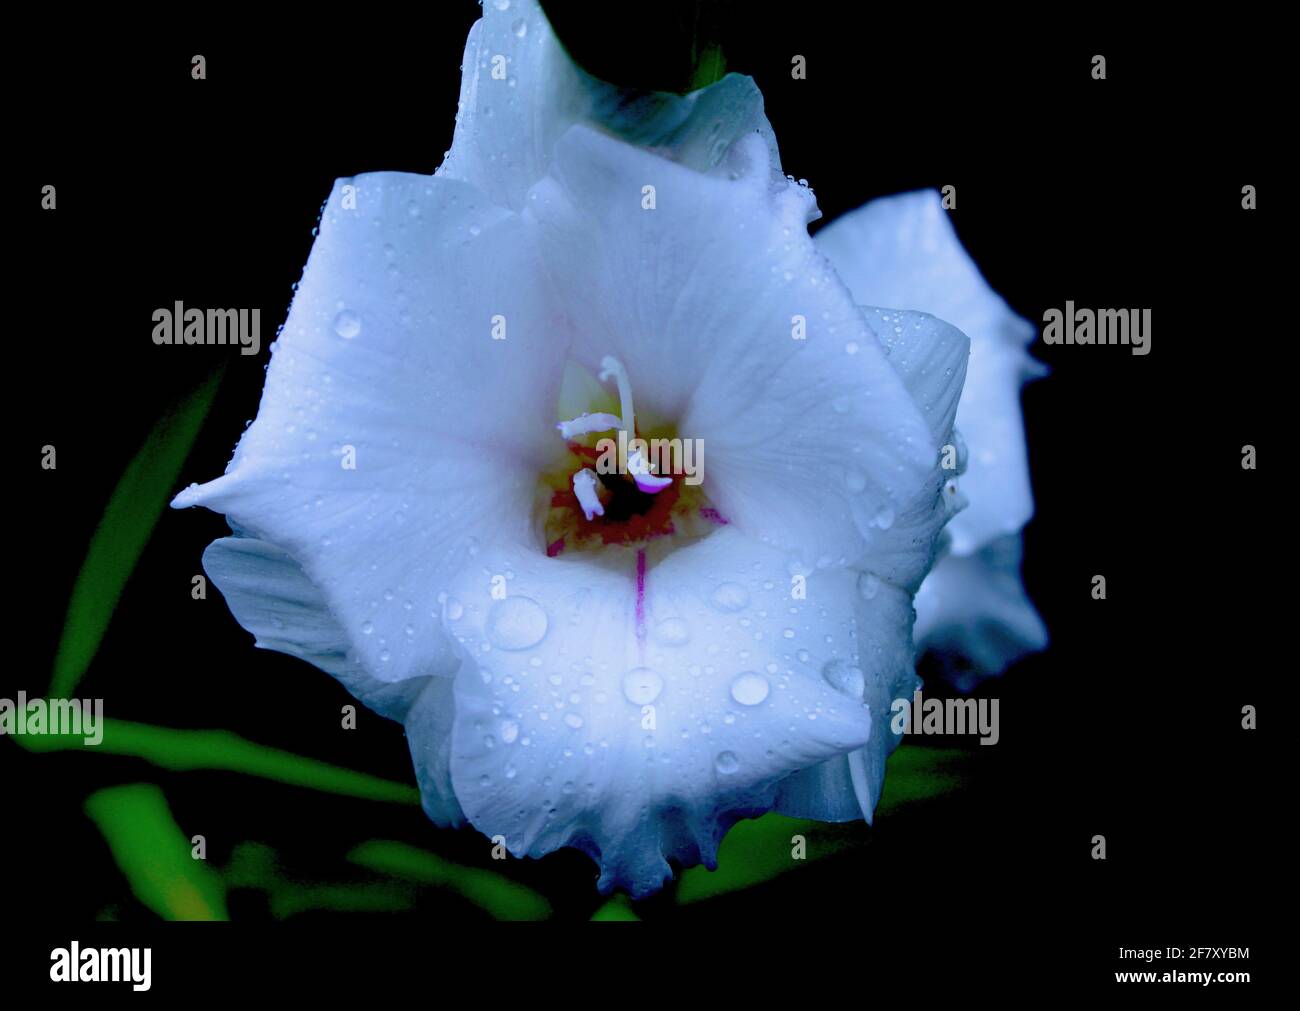 Naturfotografie weiß Gladioli Porträt. Regentropfen werden auf den zarten weißen Blütenblättern duftender Gladiolen eingefangen. Weiß, Reinheit, frisch und Natur. Stockfoto